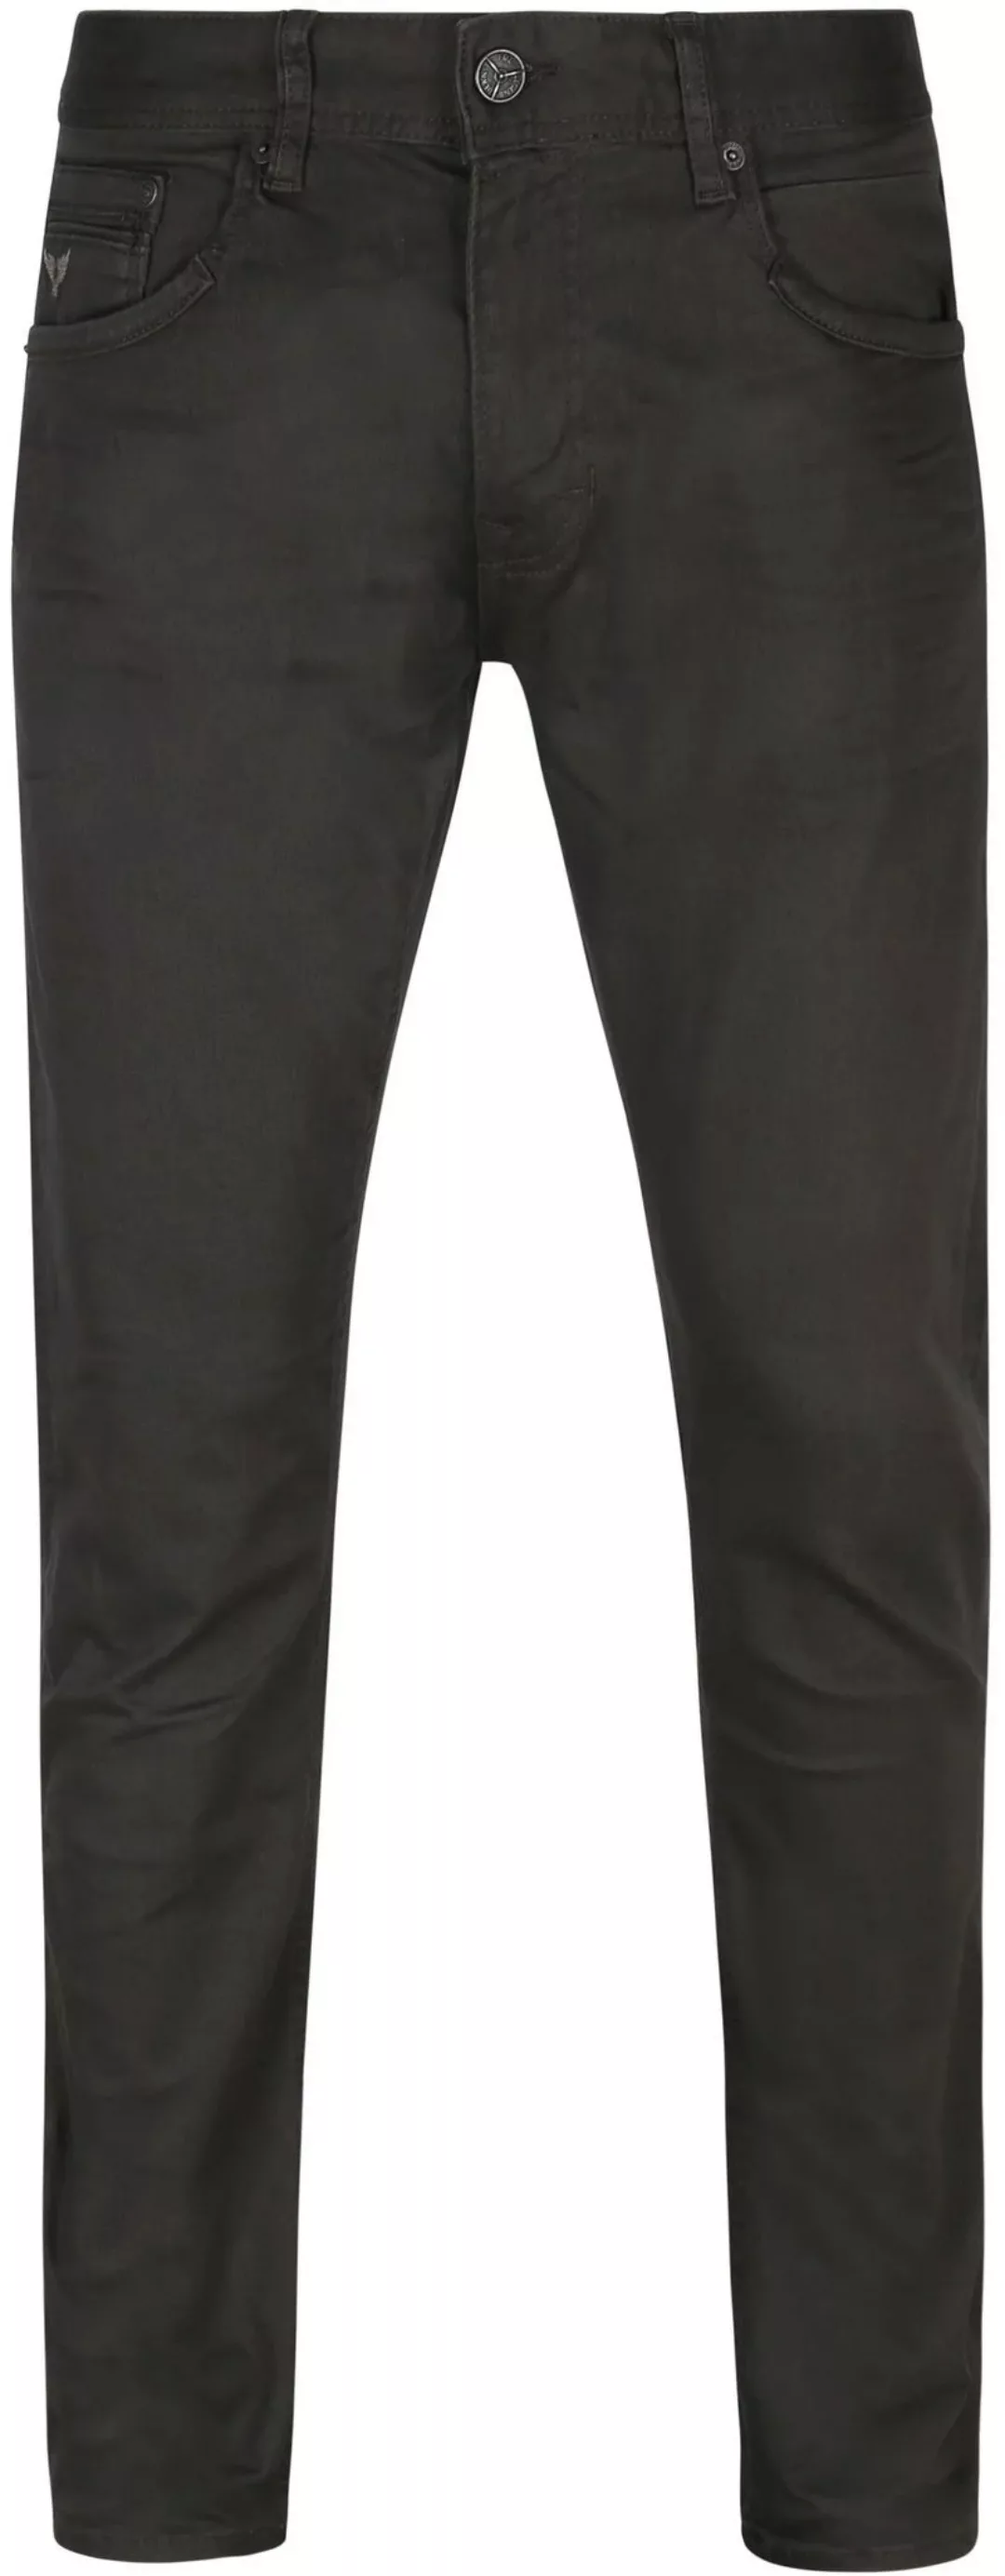 PME Legend Tailwheel Jeans Anthrazit - Größe W 38 - L 32 günstig online kaufen